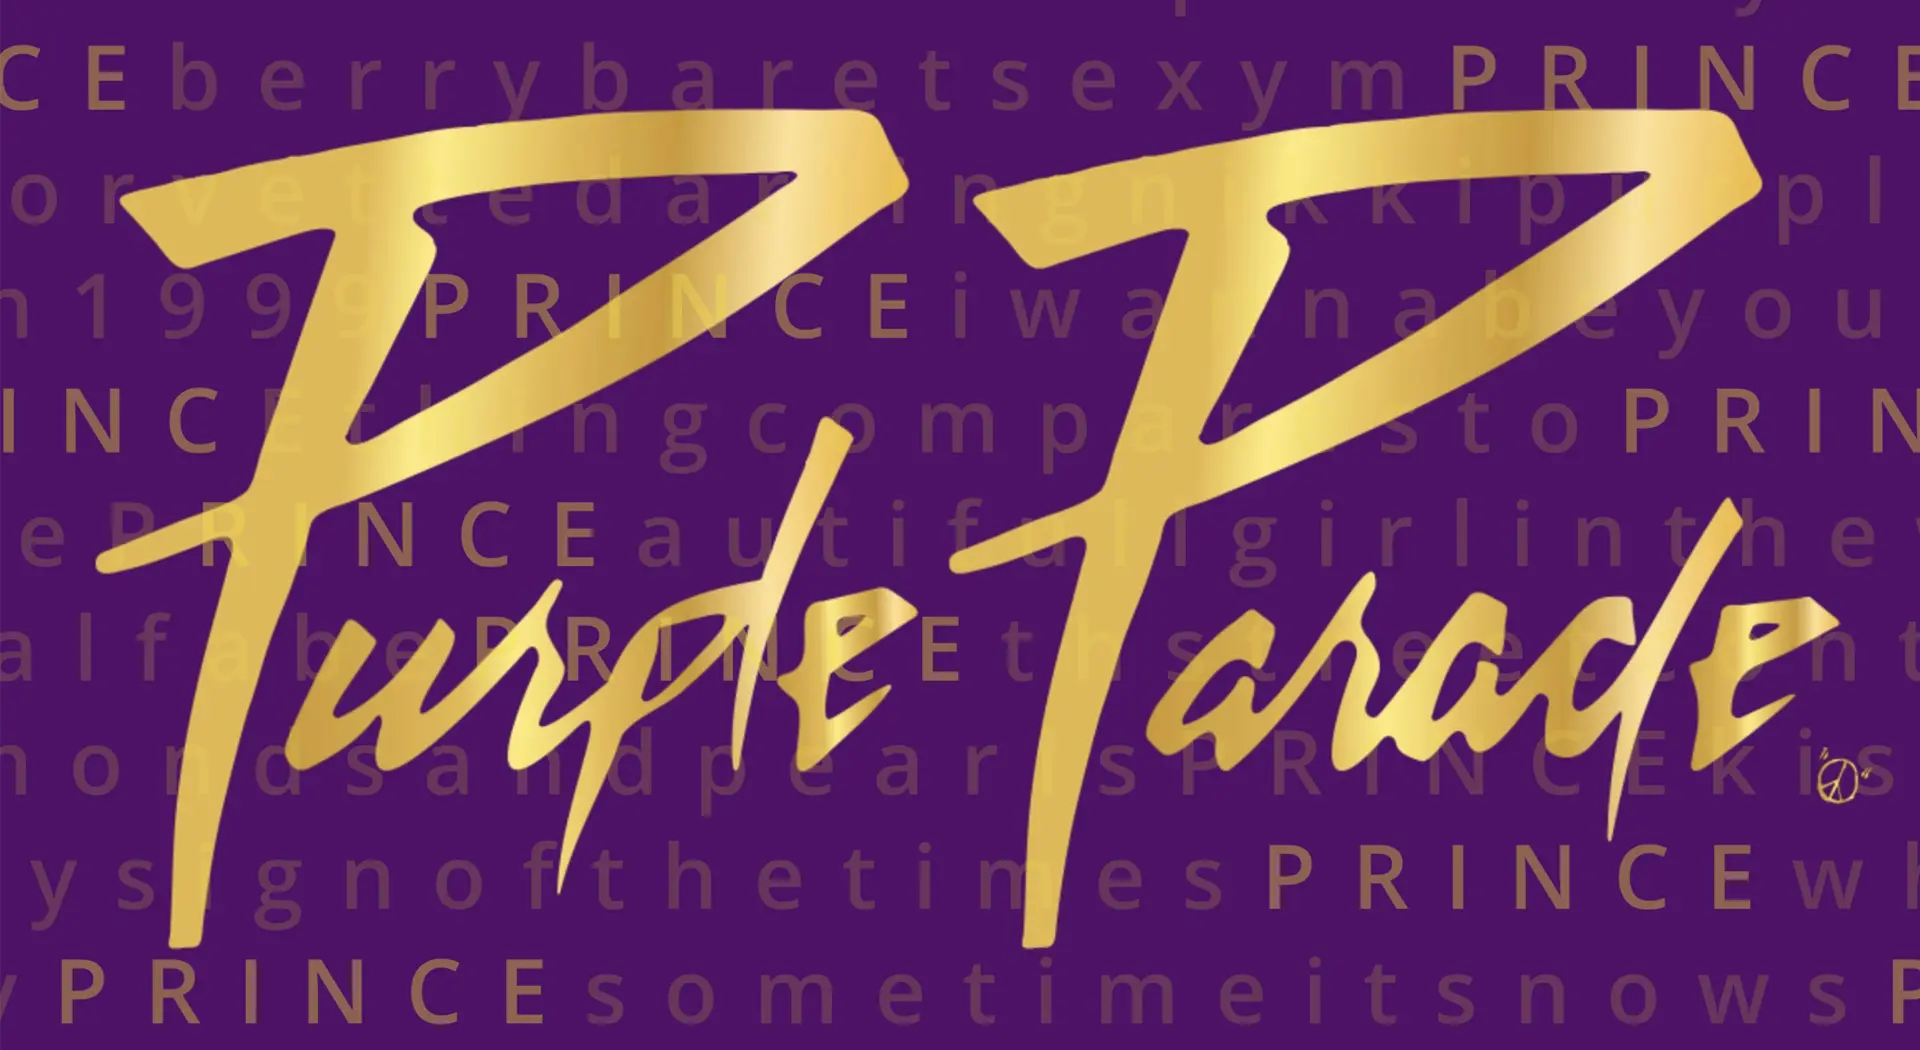 PurpleParade_NY